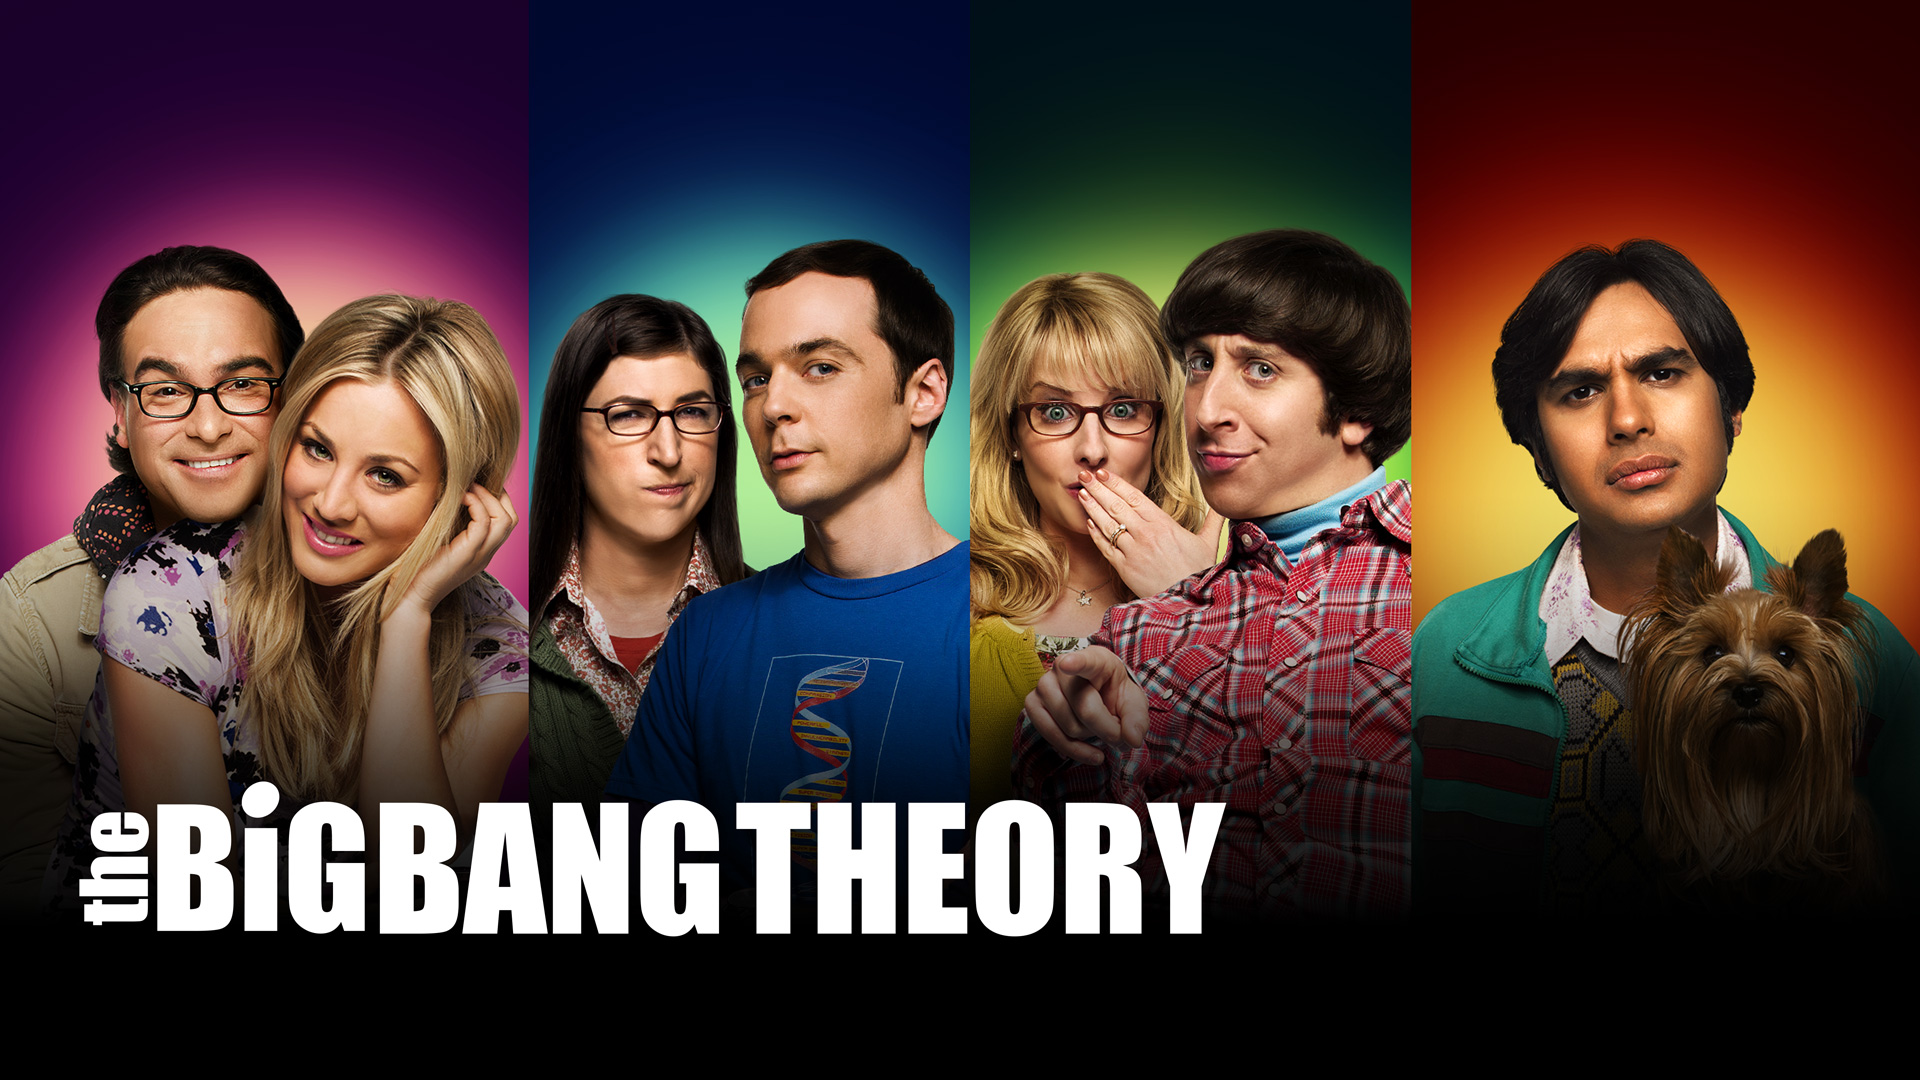 Big Bang Theory Microsoft Teams Background